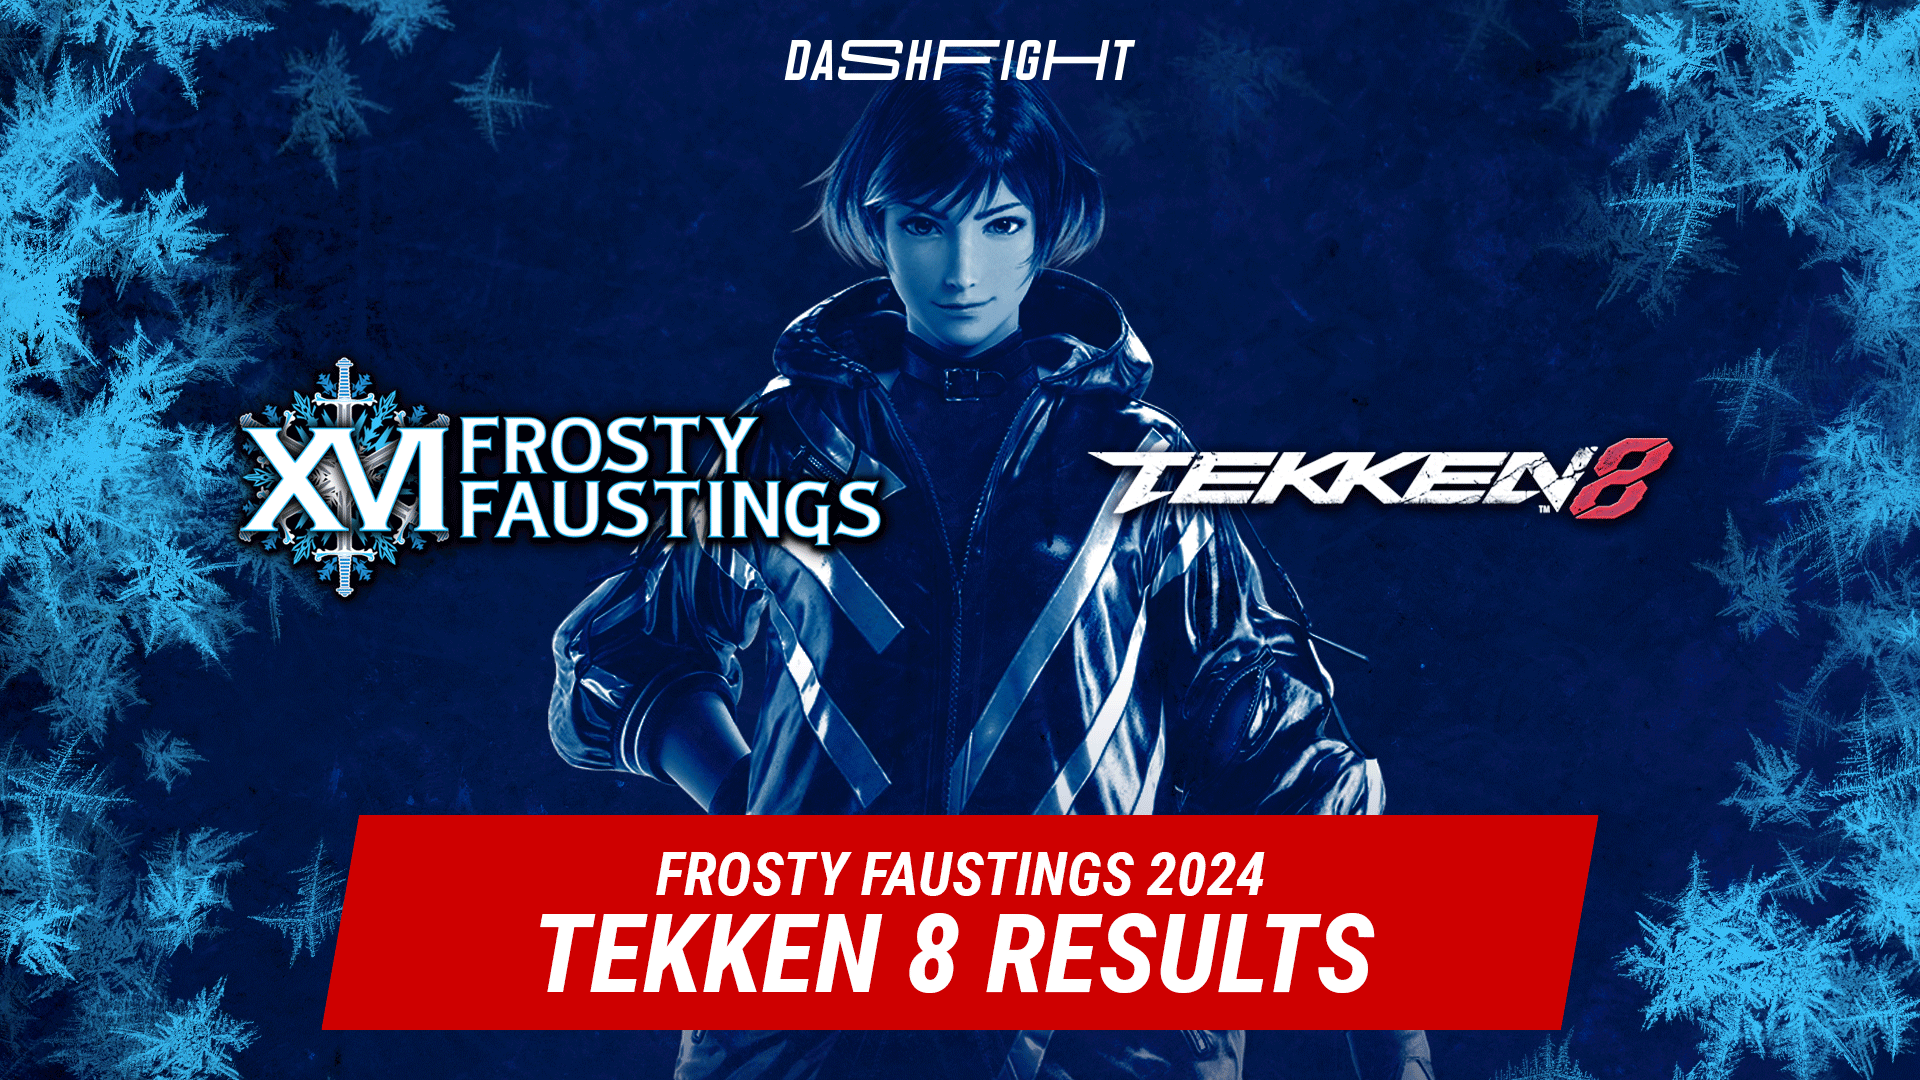 Frosty Faustings XVI 2024: Tekken 8 Results